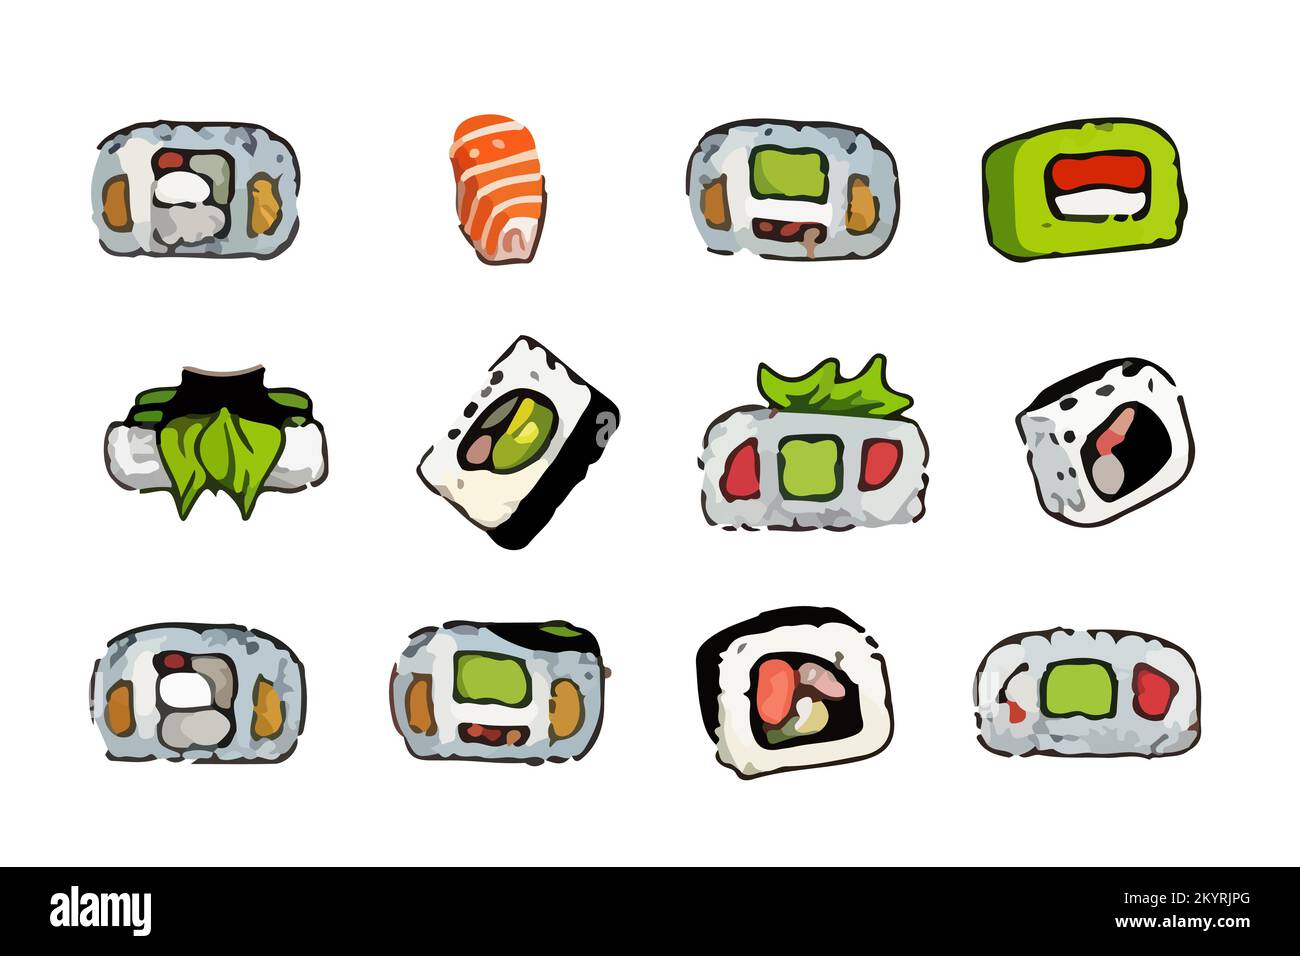 Vector-Sushi-Set. Brötchen, Temaki und inari, Ikura. Tolle Auswahl verschiedener Sushi-Arten, isoliert auf weißem Hintergrund. Stock Vektor